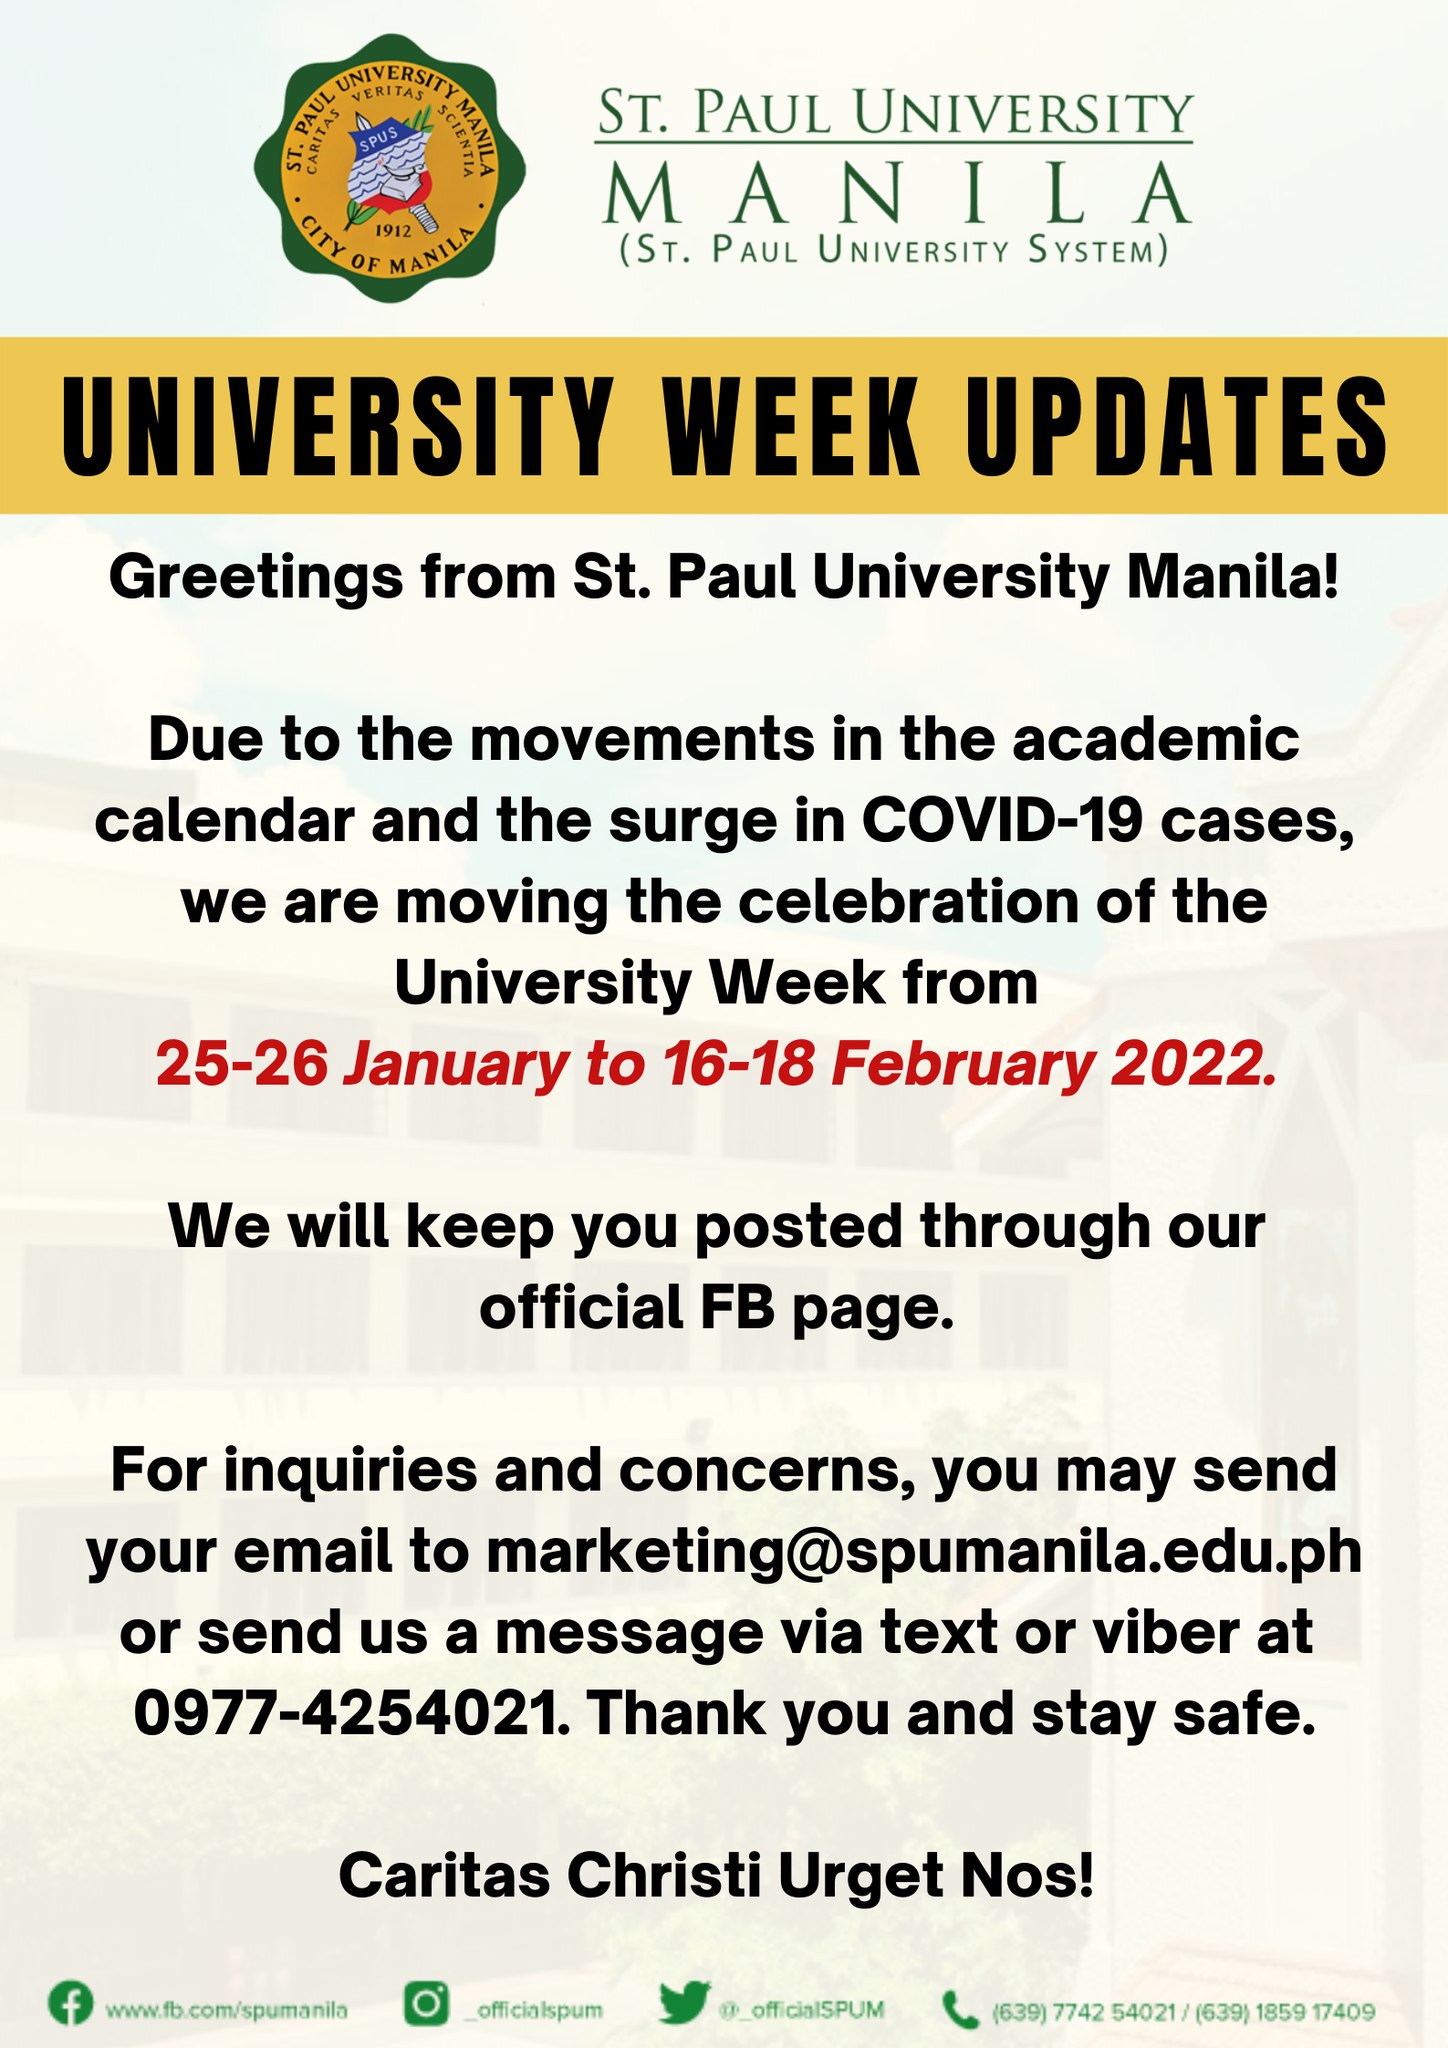 University week 2022 update